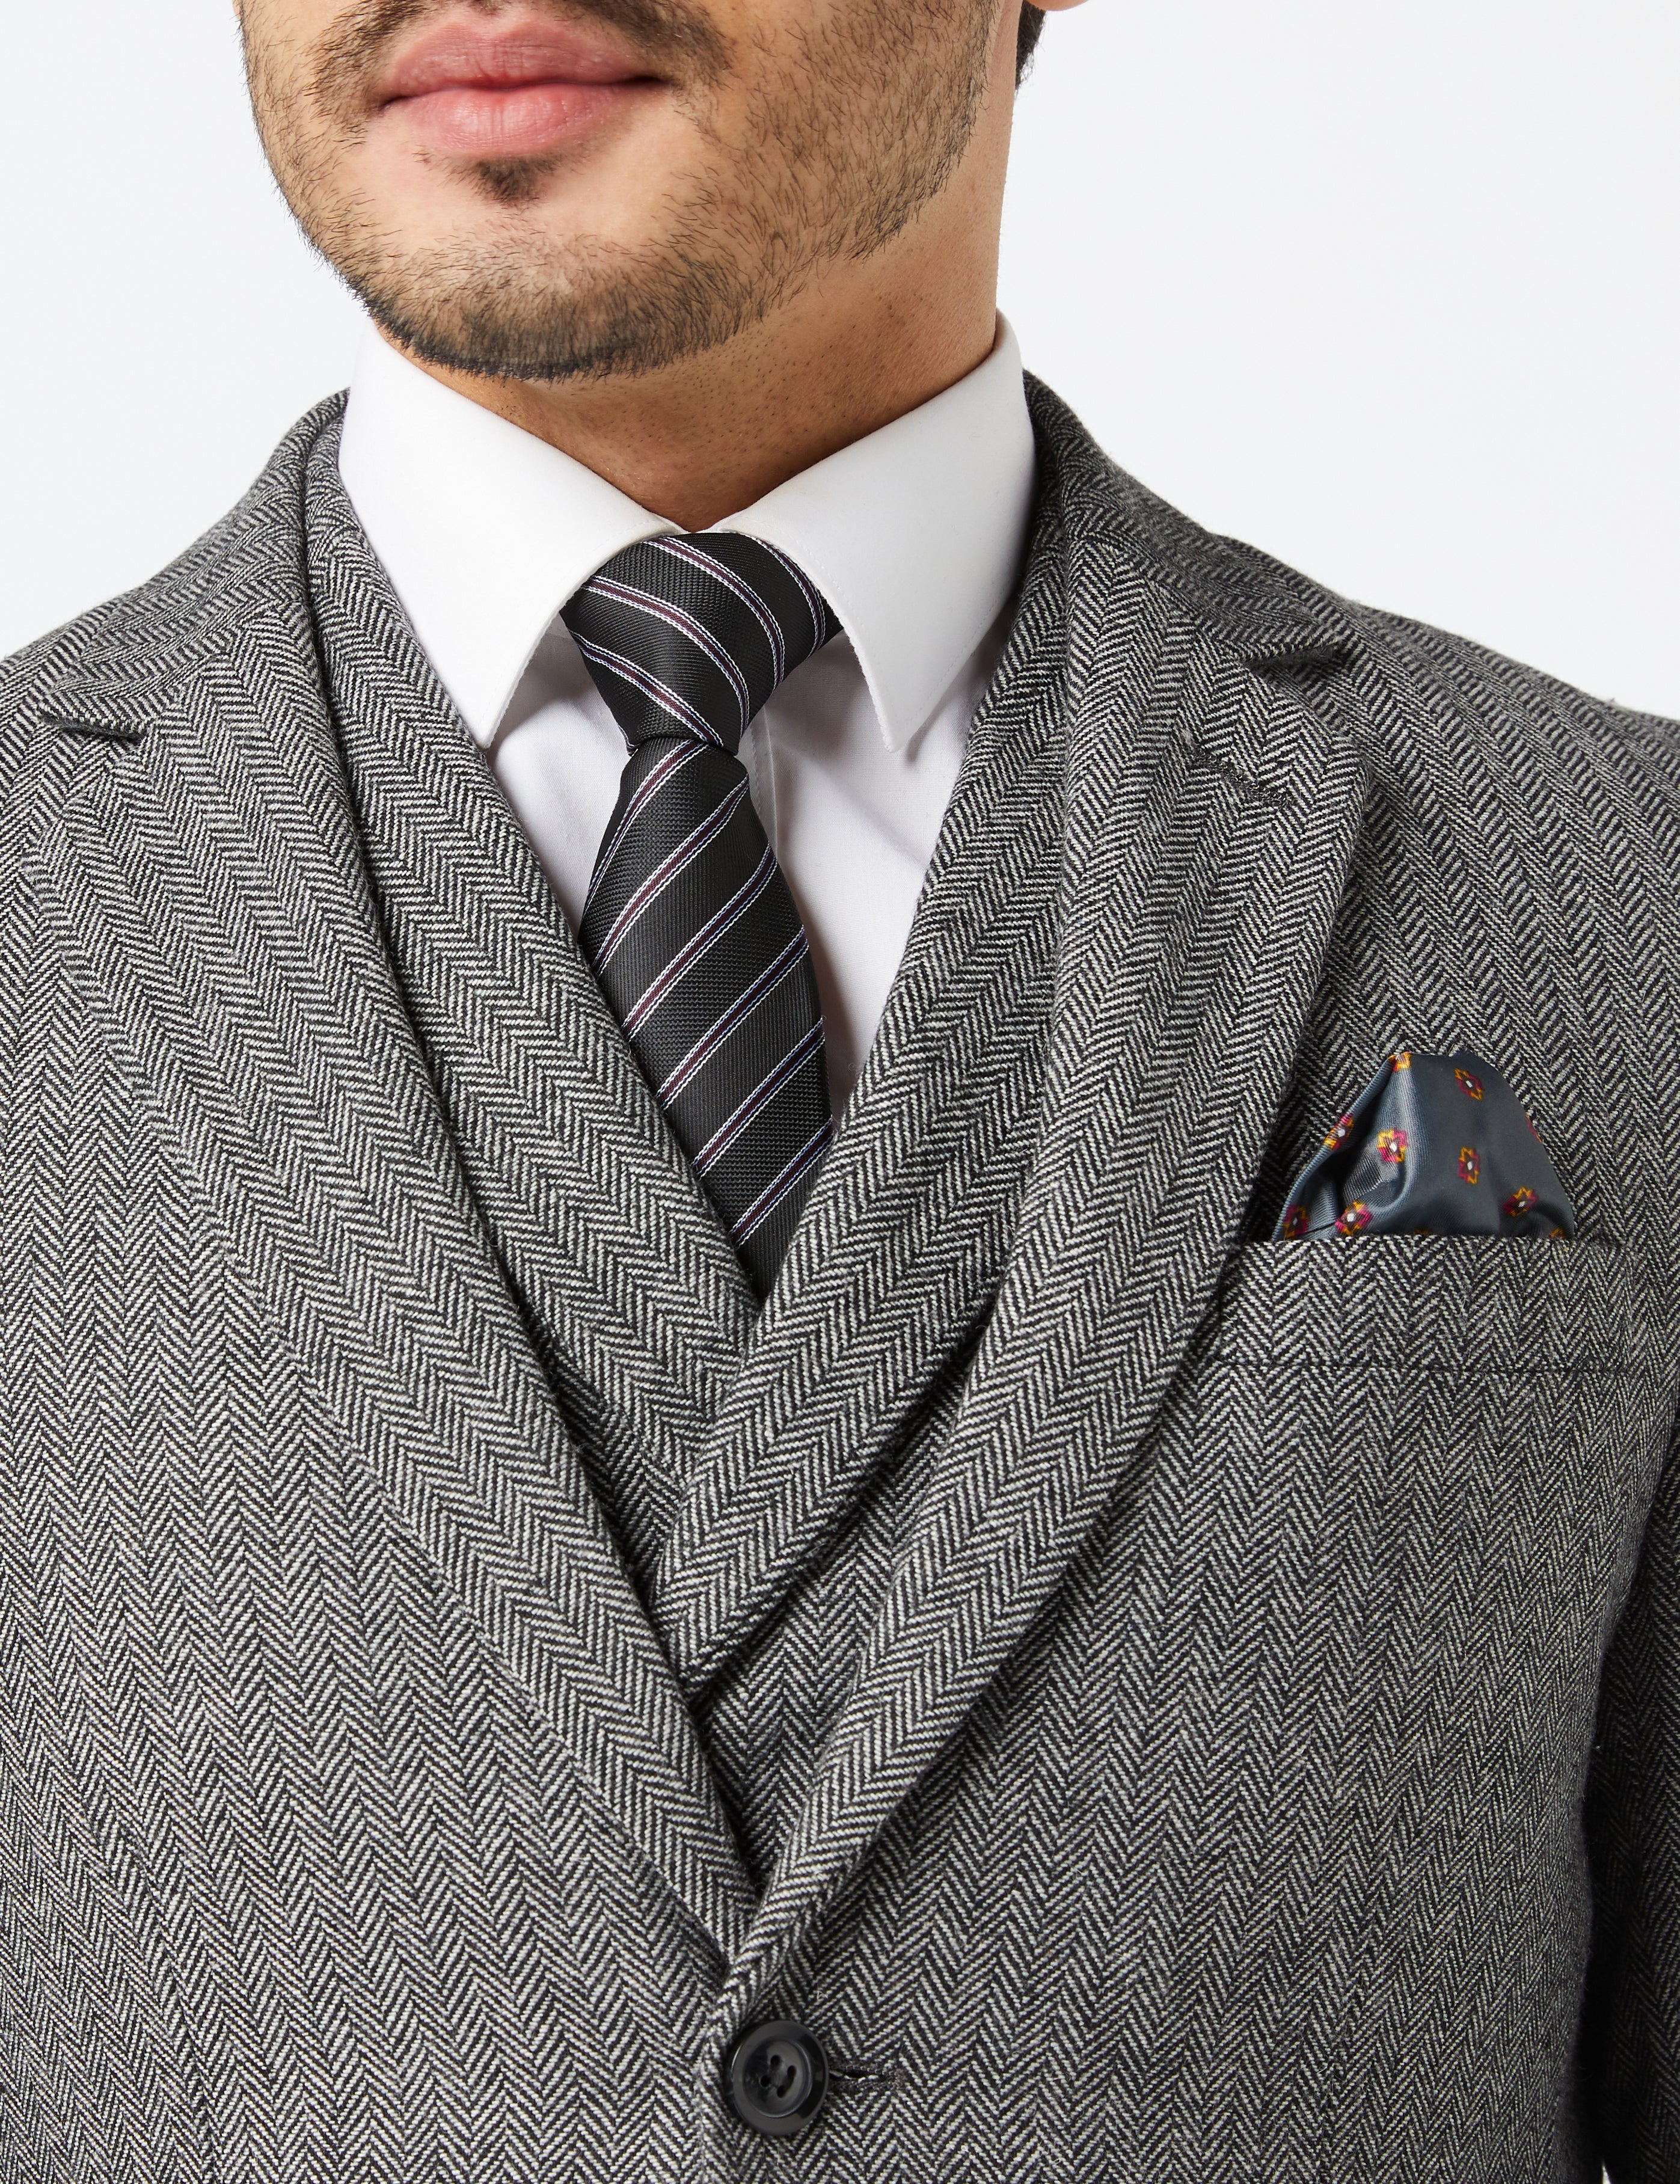 Grey Herringbone Tweed Suit